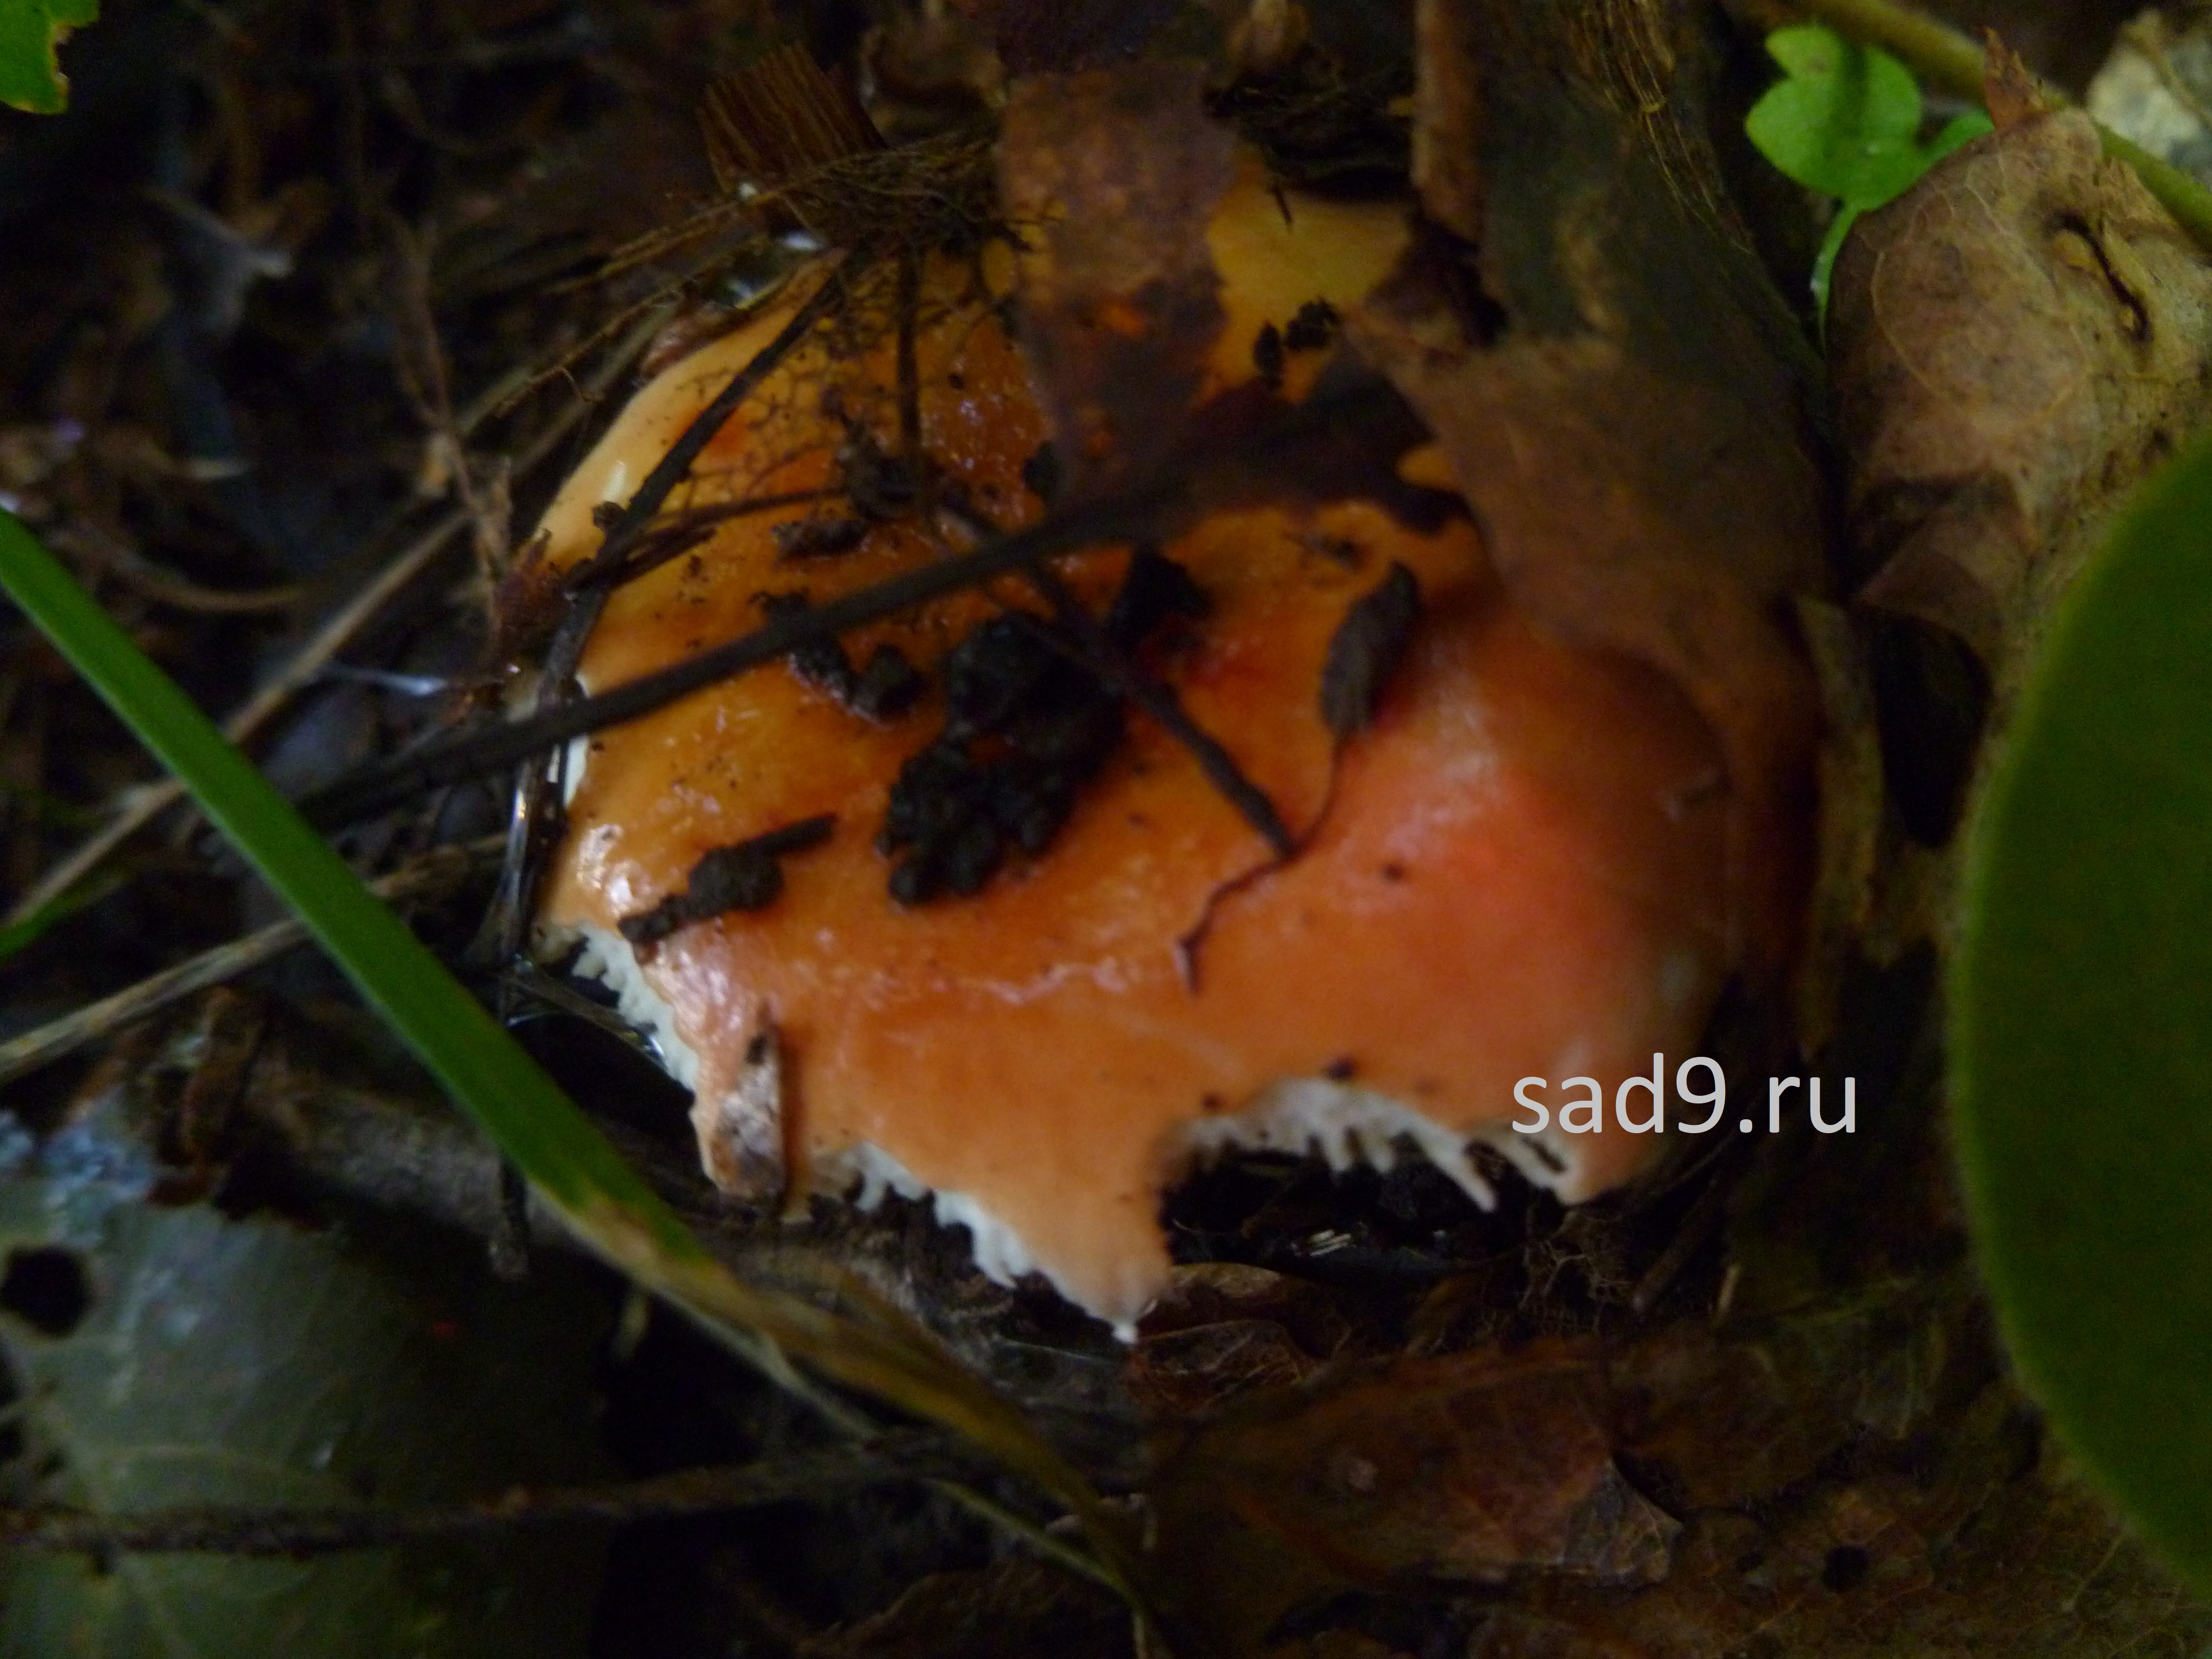 Картинки грибов съедобных - синявка или сыроежка